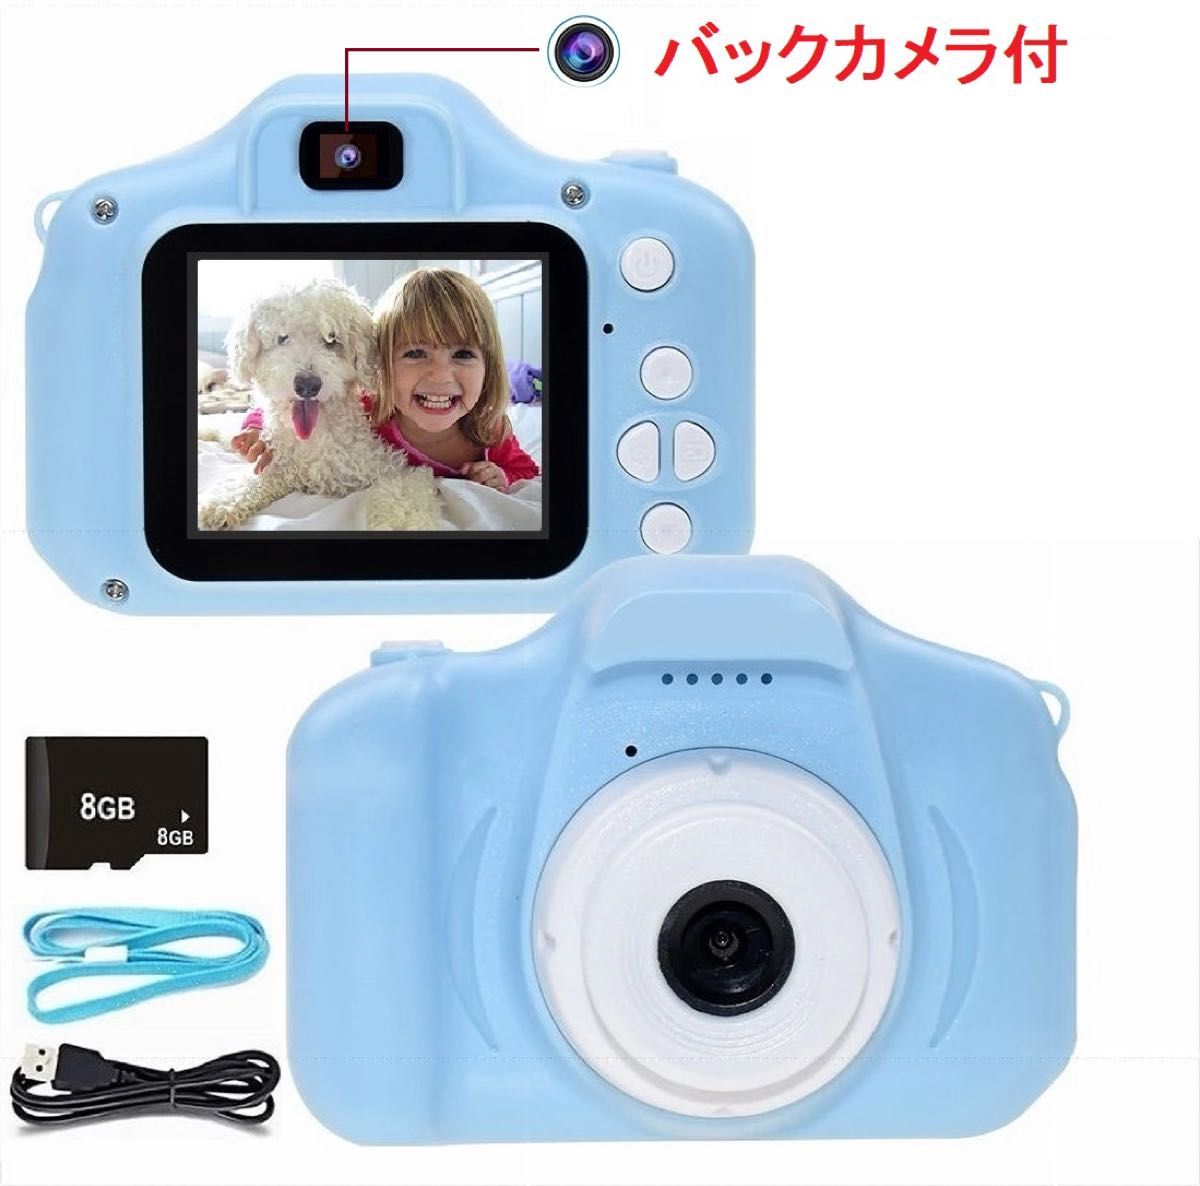 キッズカメラ 自撮りカメラ 前後カメラ バックカメラ 子供用デジタルカメラ SDカード プレゼント トイカメラ おもちゃカメラ3